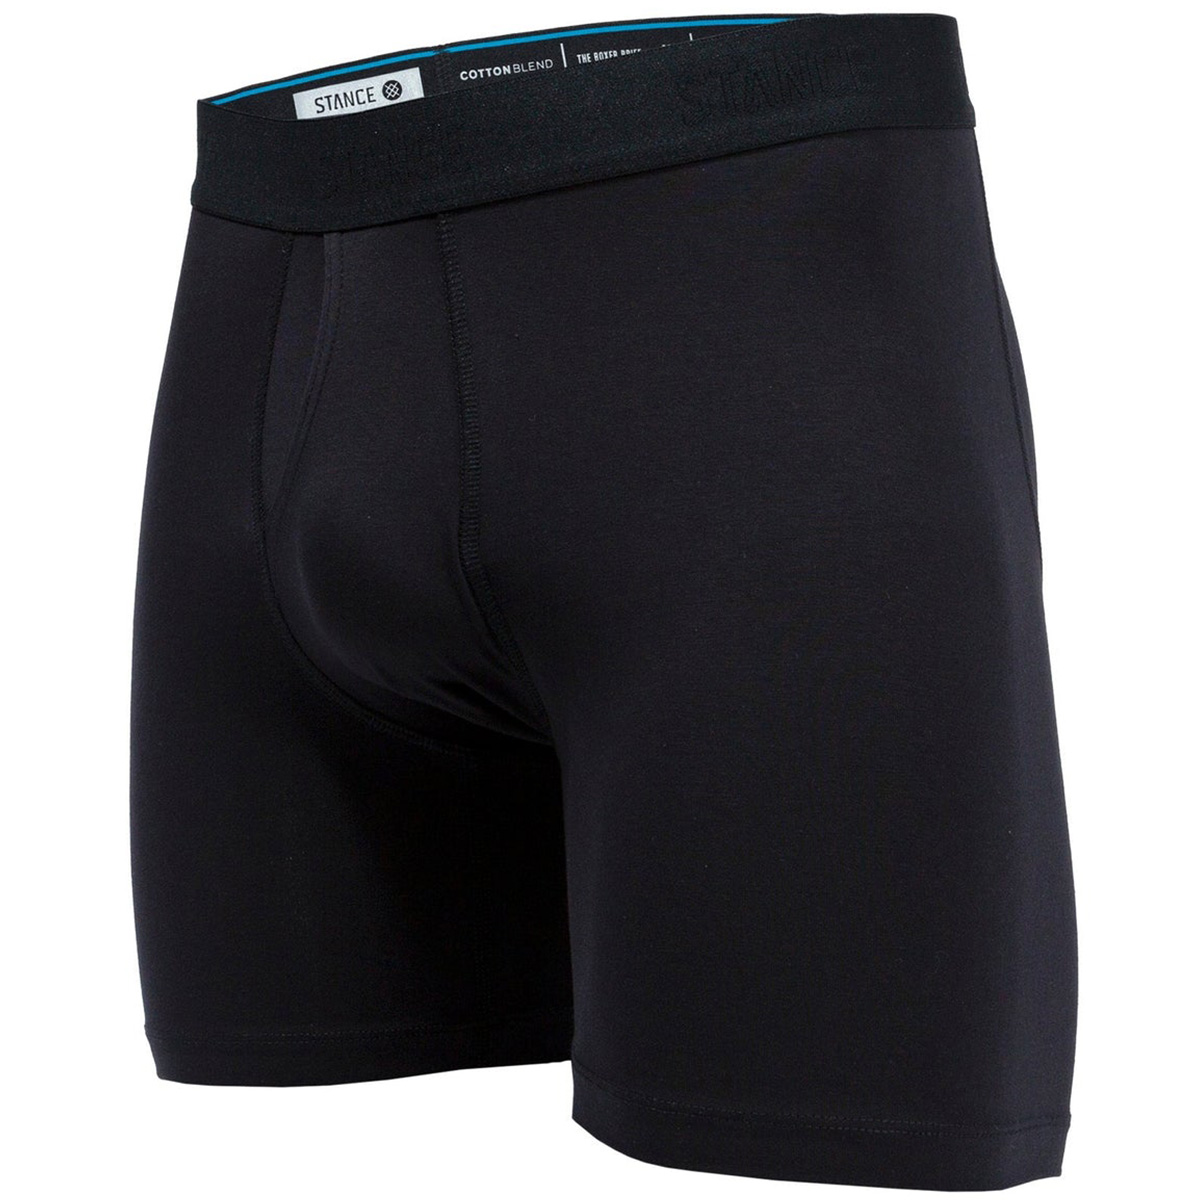 Stance Standard 6in Boxer Brief Underwear Black